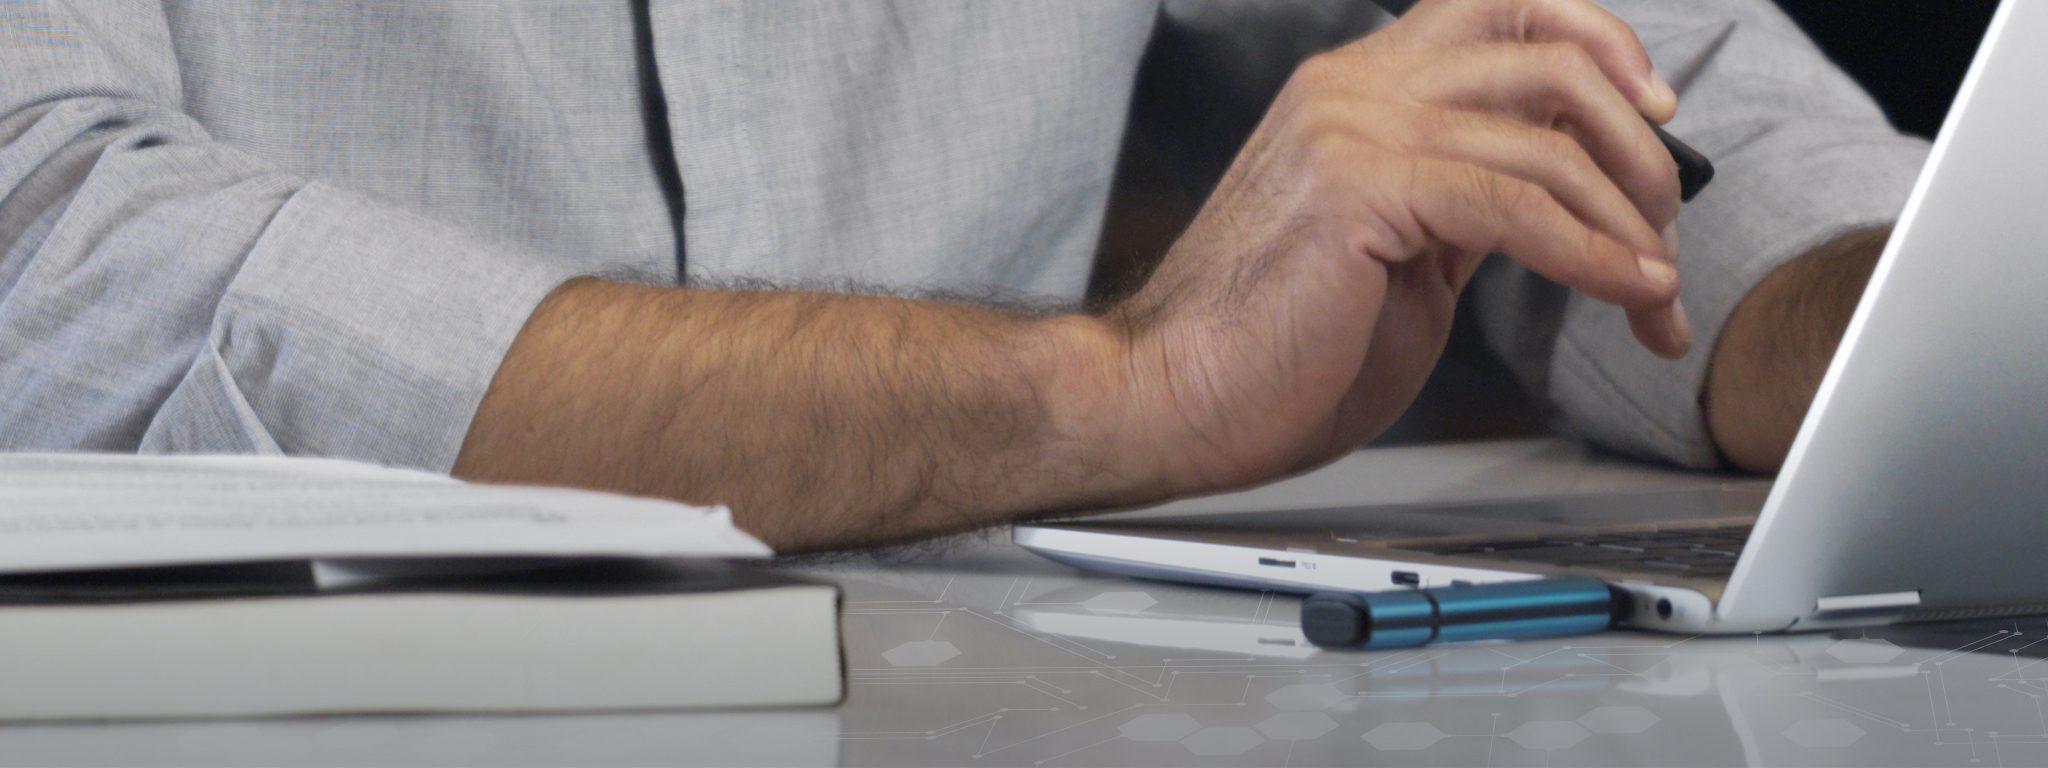 Zbliżenie na laptop z podłączoną pamięcią USB Kingston IronKey i męską ręką piszącą na klawiaturze